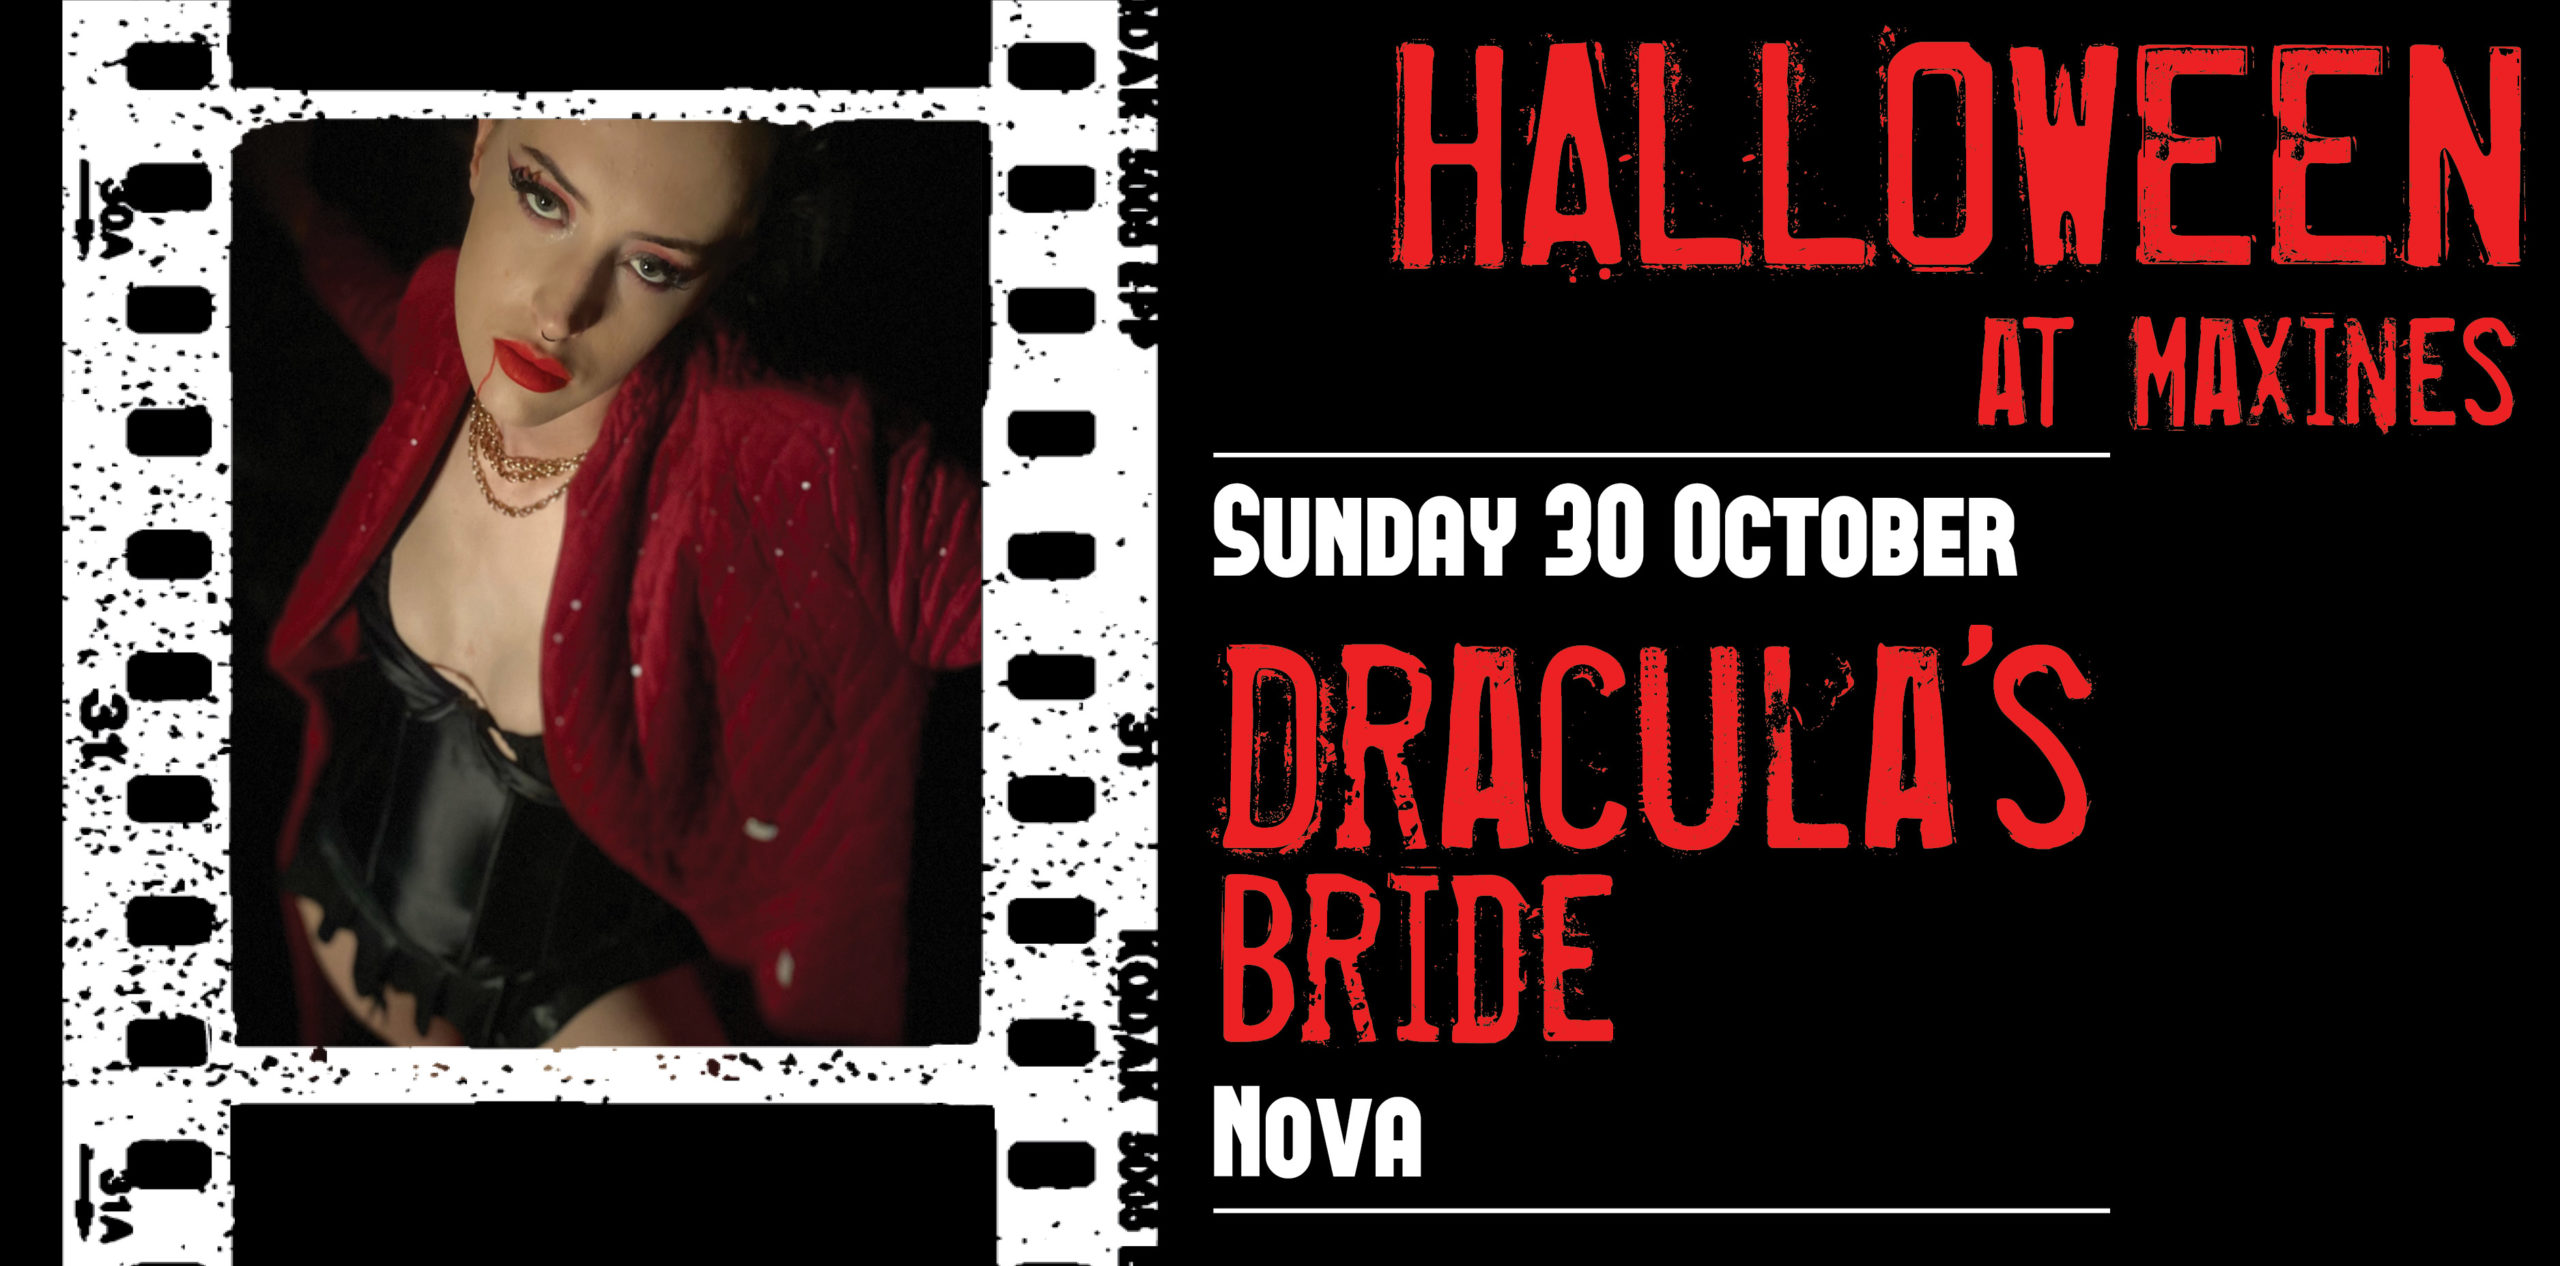 Halloween at Maxines Sunday Oct 30th, Dracula's Bride with Nova